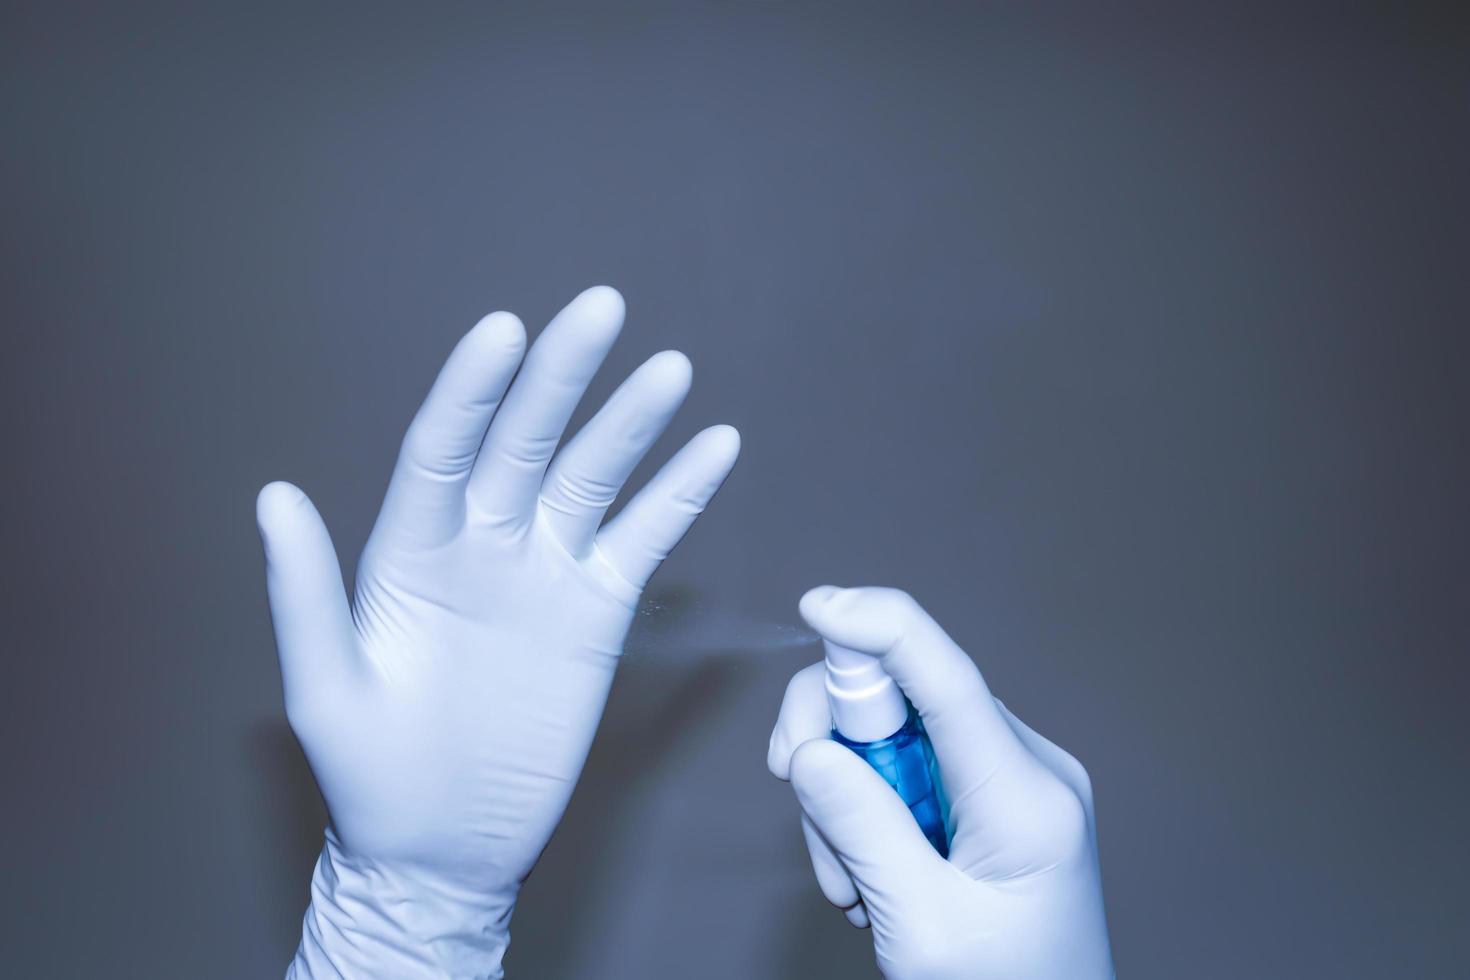 läkare och sjuksköterskor injicerar alkoholgel för att döda viruset och rengöra handskarna på sjukhuset eller labbet. koncept för rengöring och virusskydd i människokroppen. foto